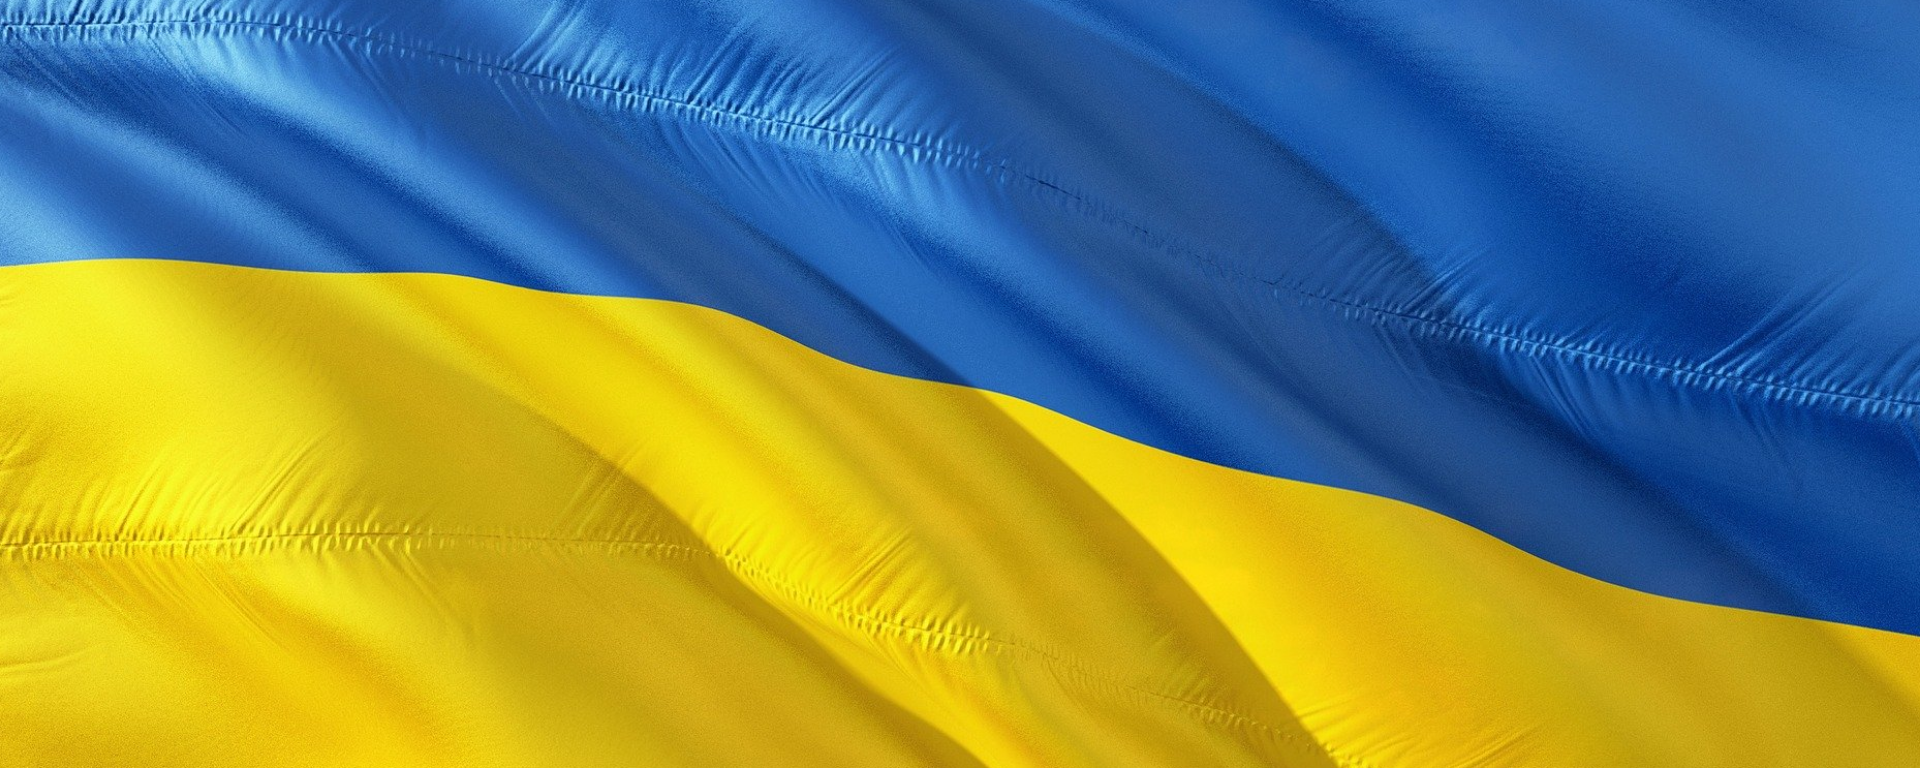 Meine Position zum Krieg in der Ukraine